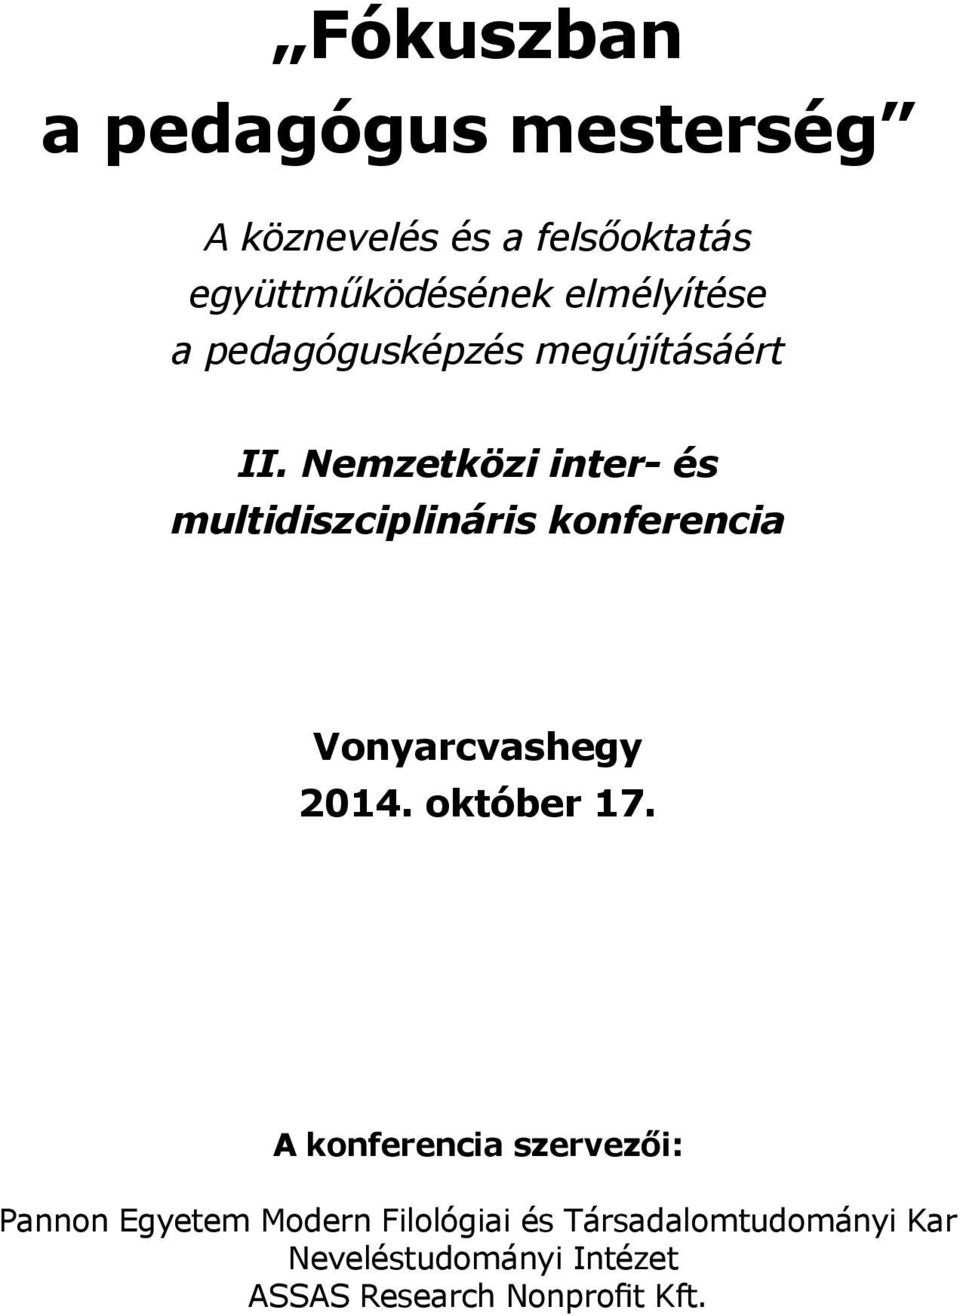 Nemzetközi inter- és multidiszciplináris konferencia Vonyarcvashegy 2014. október 17.